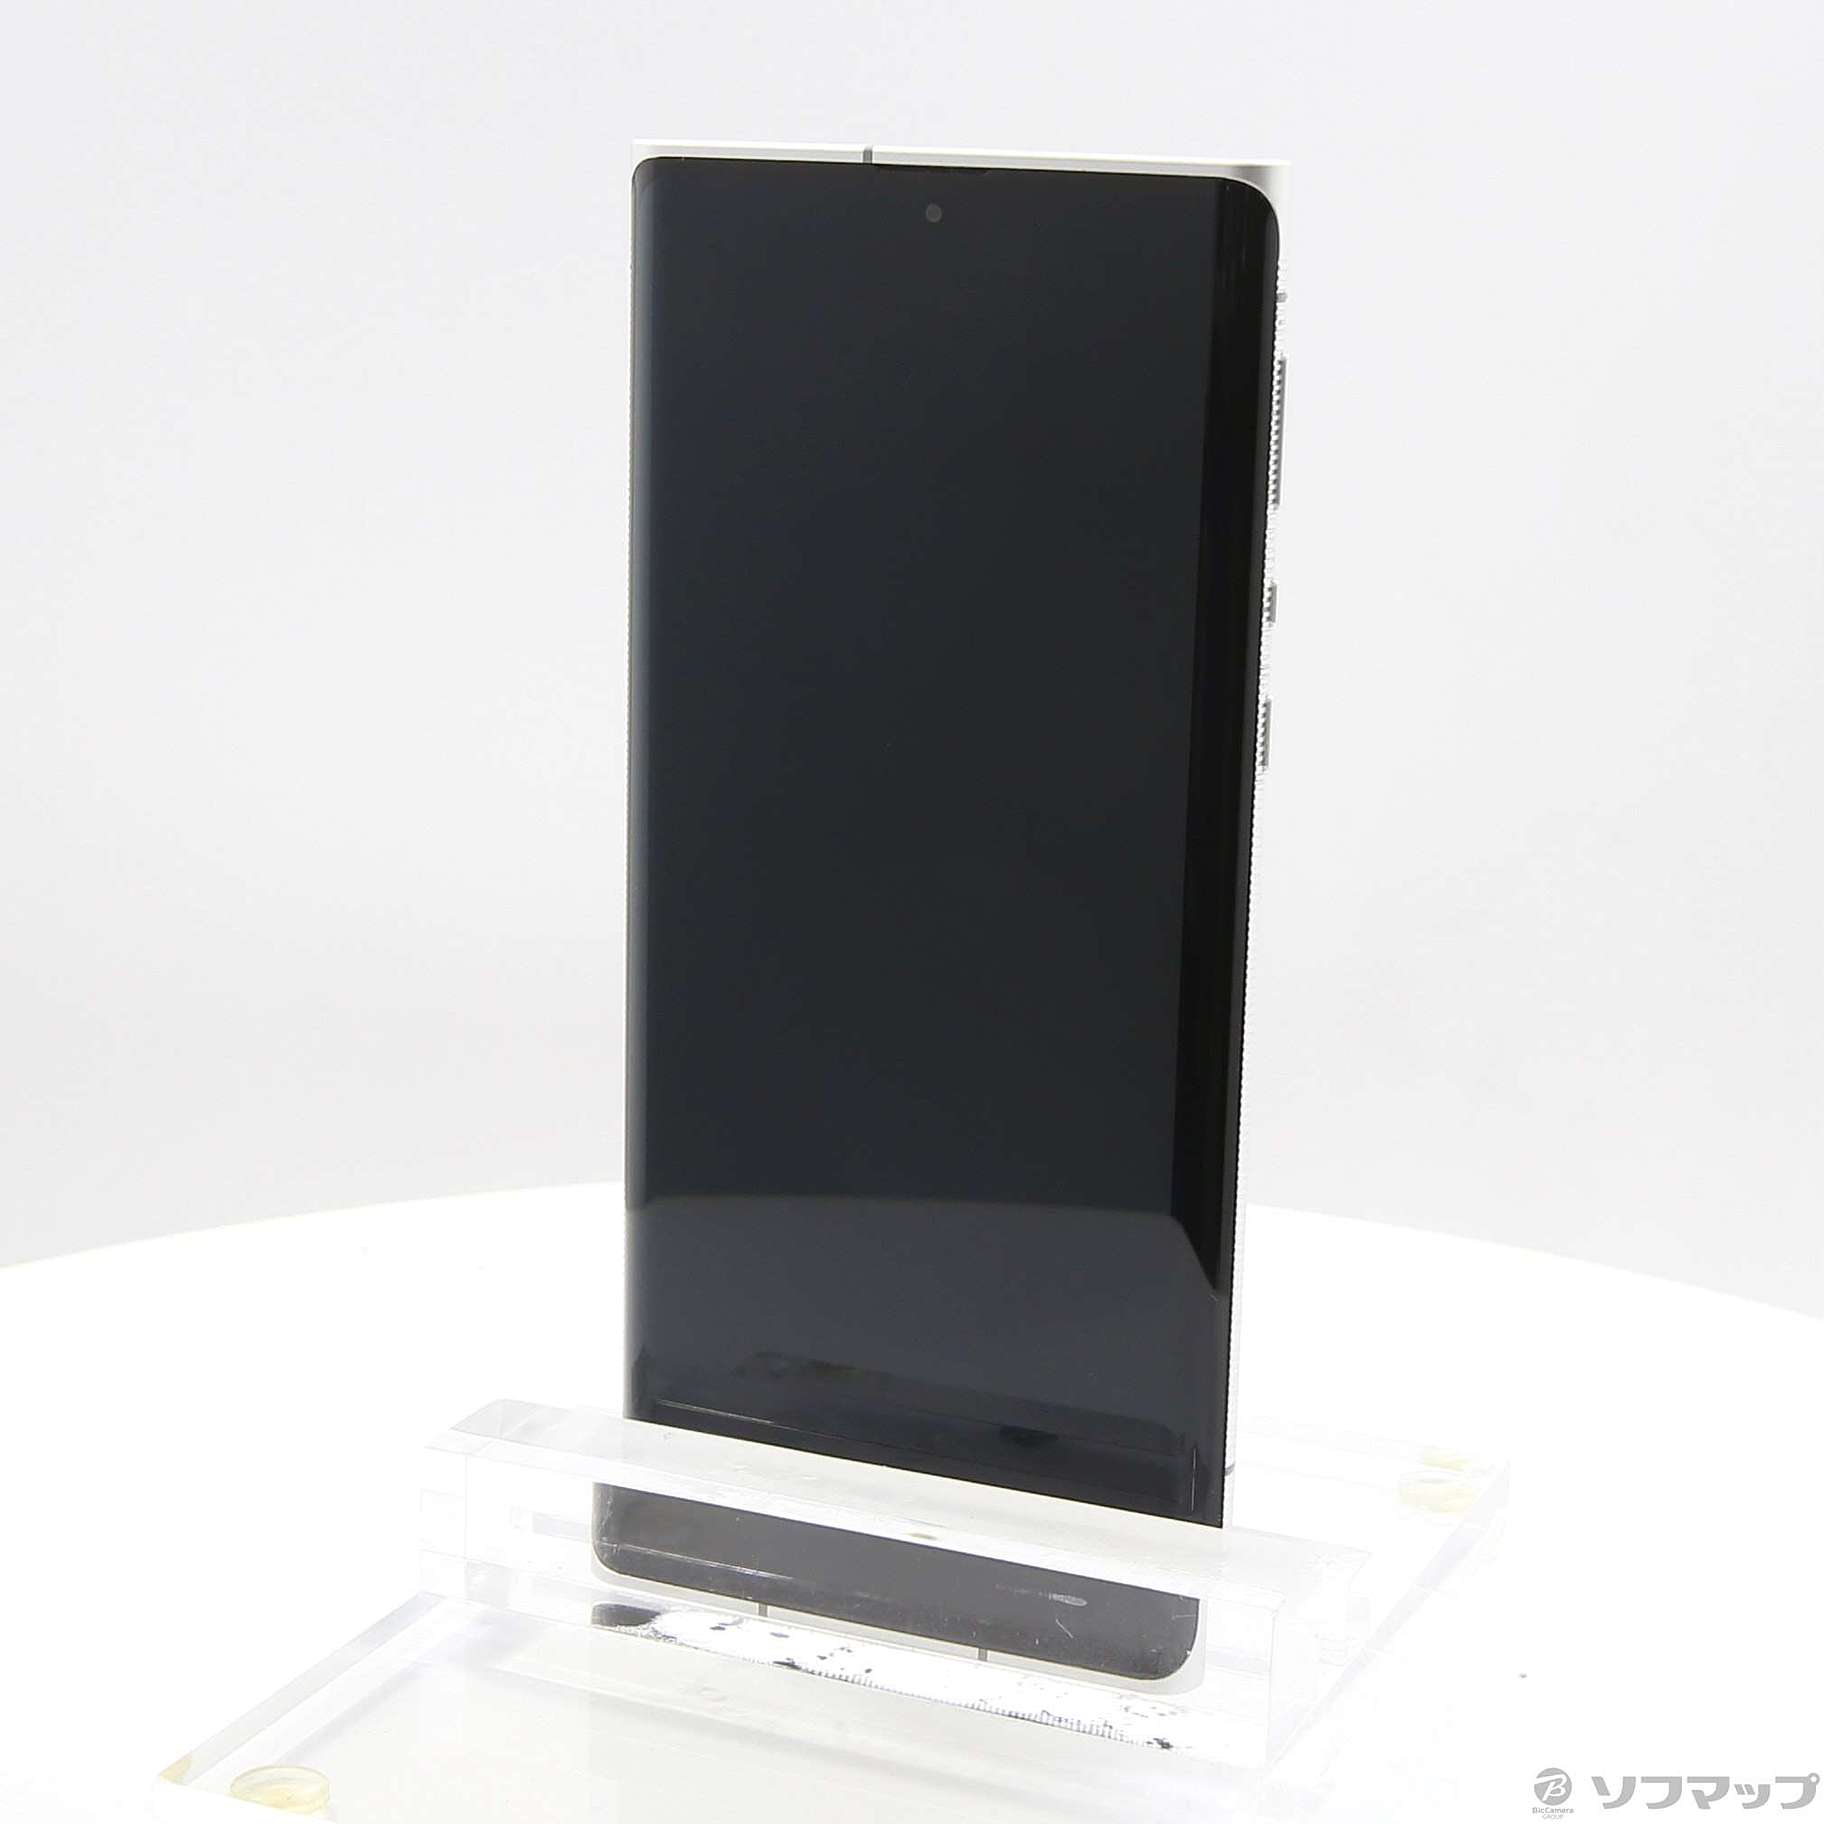 中古】Leitz Phone 1 256GB ライカシルバー LP-01 SoftBankロック解除 ...